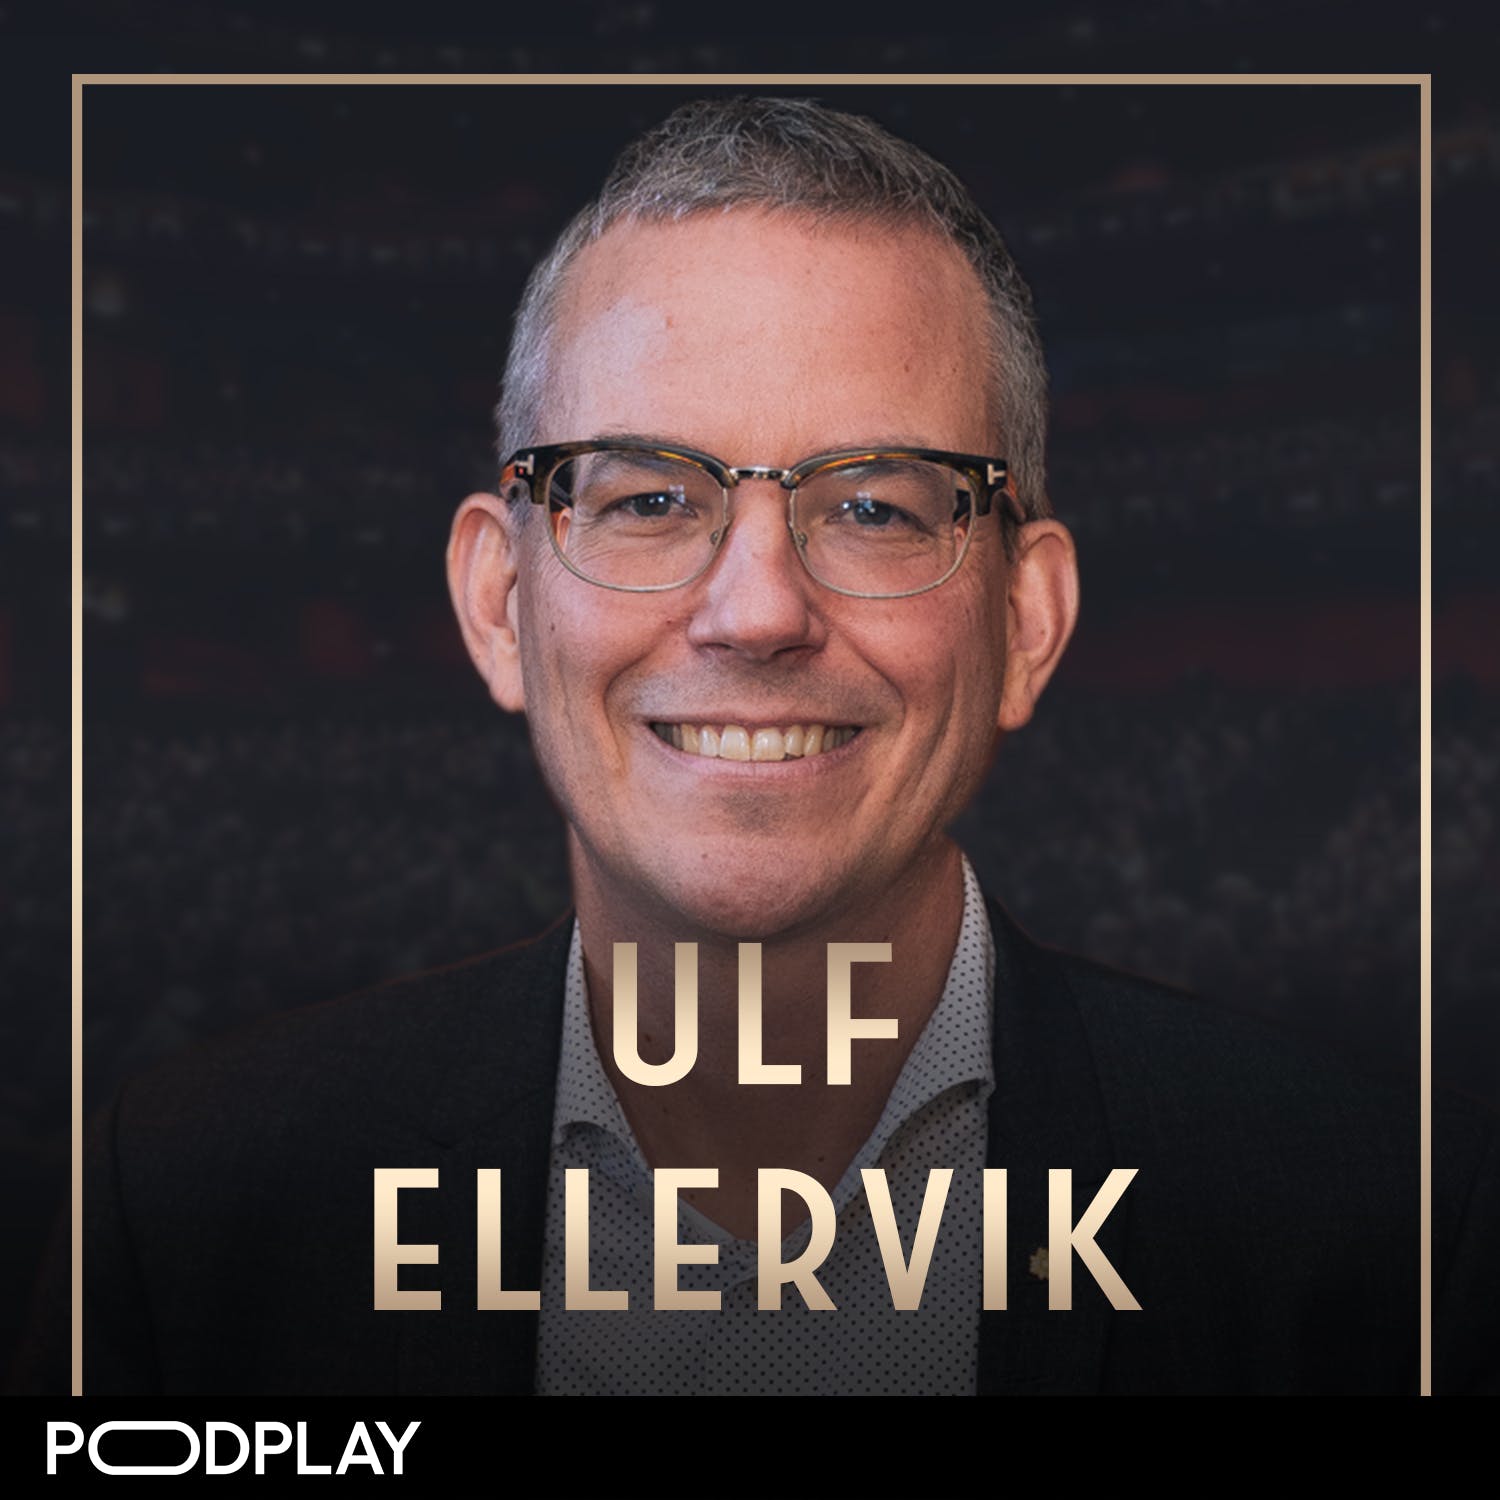 393. Ulf Ellervik - Förgiftad till döds, Original